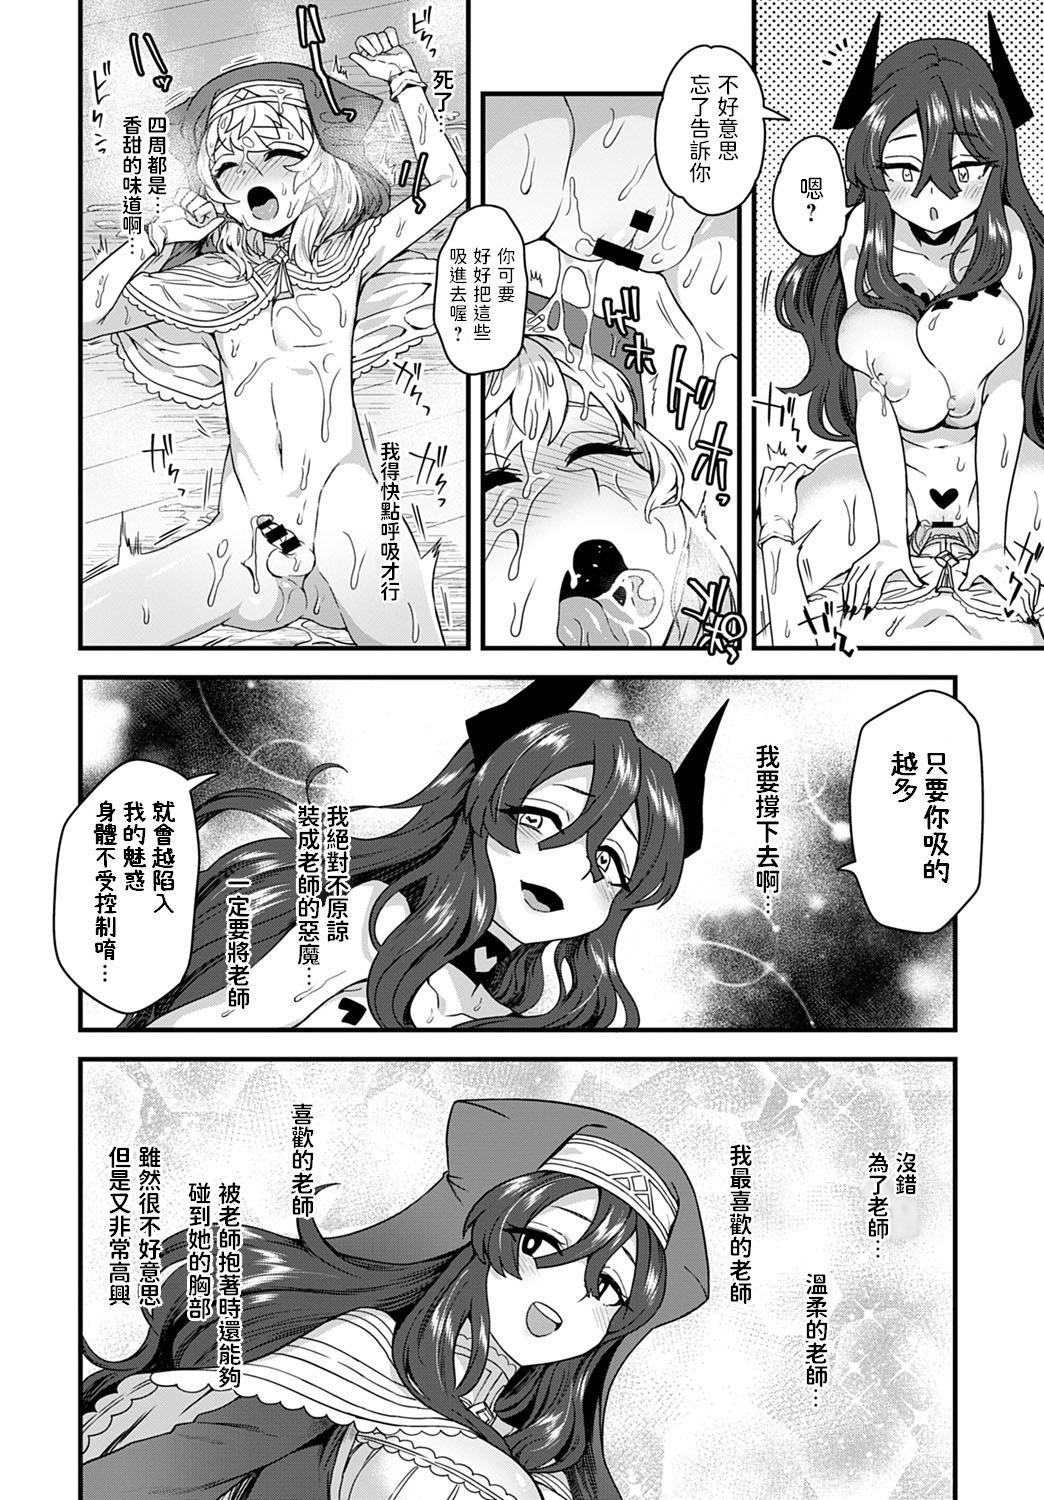 Butthole Shukufuku no Kane ga Naru Gorda - Page 10